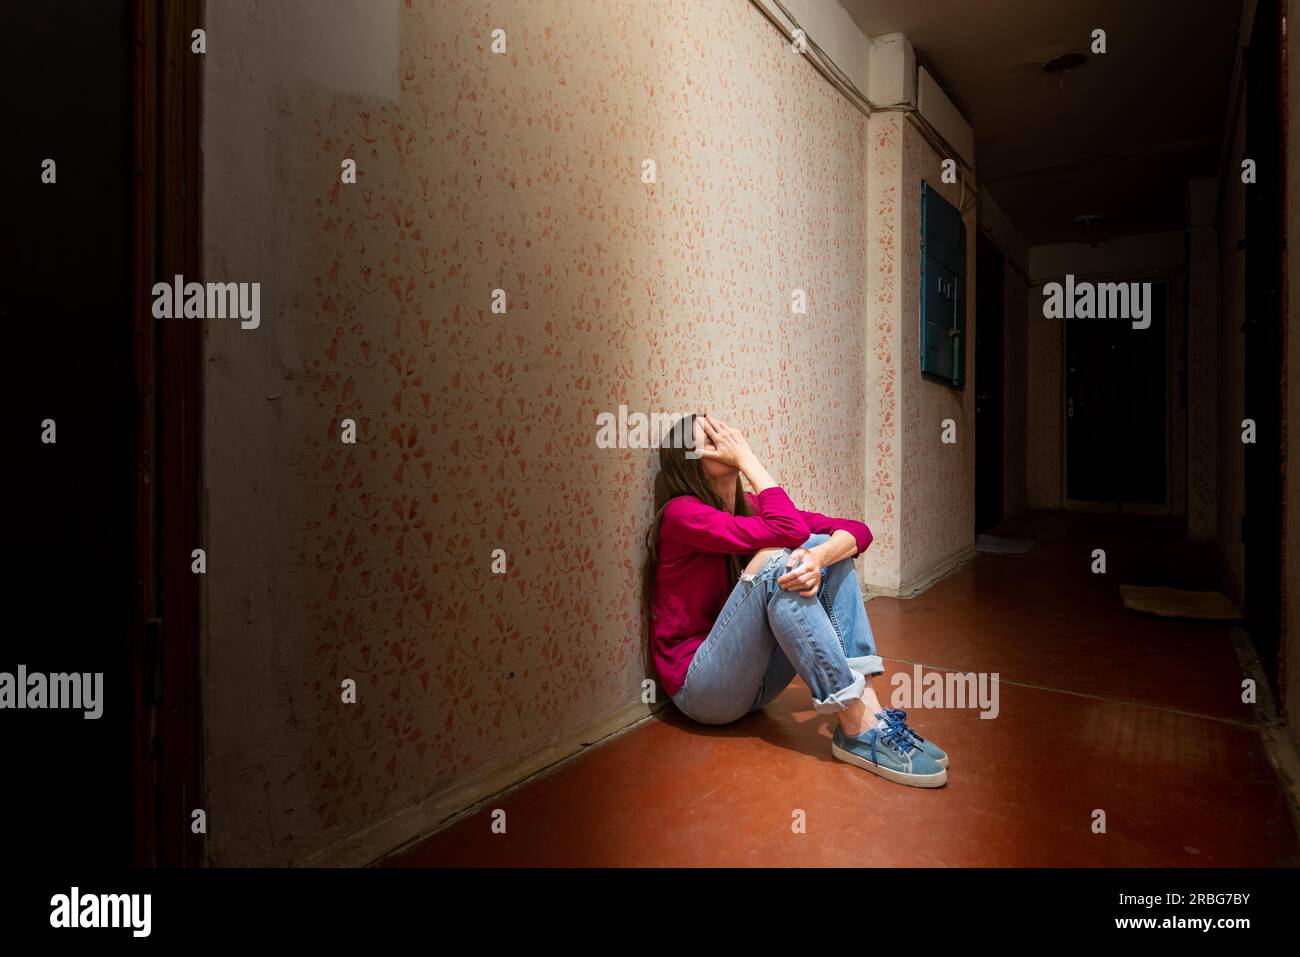 Une femme triste et désespérée est assise dans un couloir sombre éclairé par une lumière sombre. Sa douleur et ses nombreux problèmes l'ont poussée dans un isolement complet. Banque D'Images